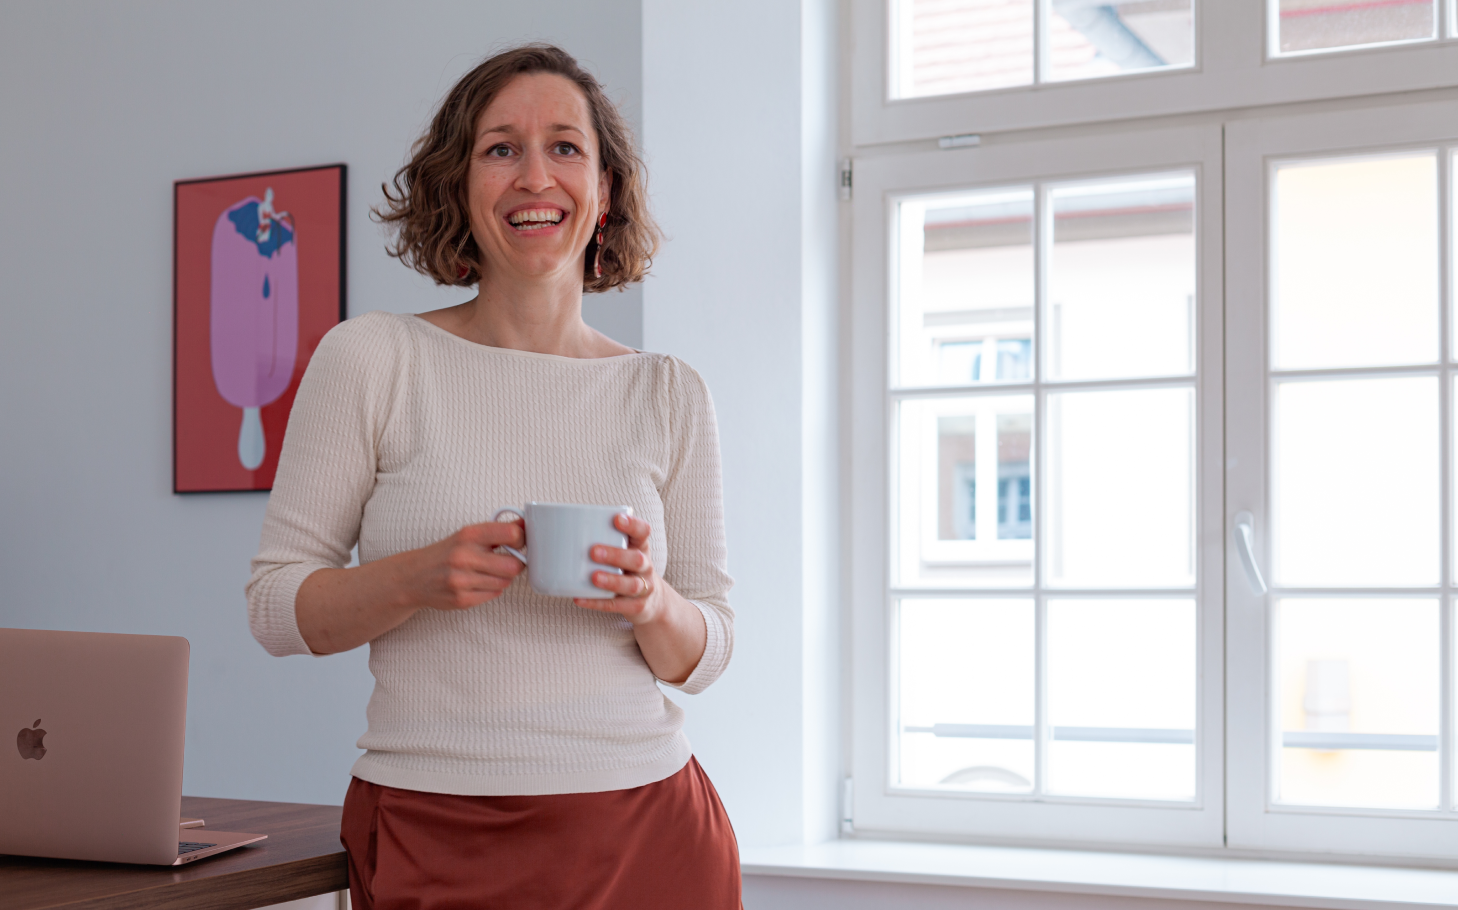 Profilbild von Bewusstseins-Coach Sonja Mewes mit Tasse in der Hand